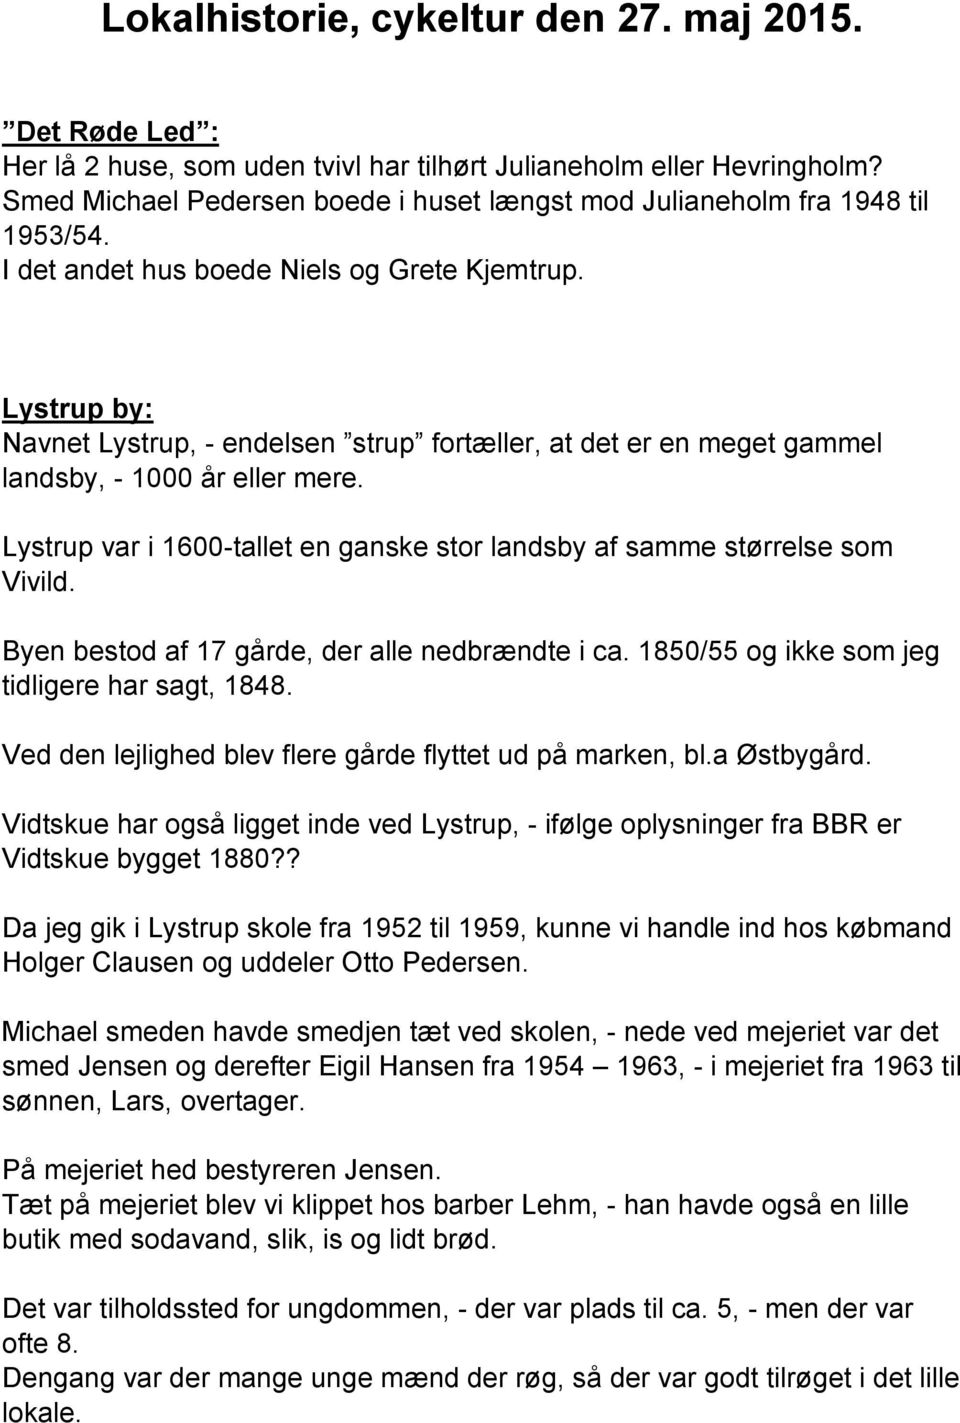 Lystrup by: Navnet Lystrup, - endelsen strup fortæller, at det er en meget gammel landsby, - 1000 år eller mere. Lystrup var i 1600-tallet en ganske stor landsby af samme størrelse som Vivild.